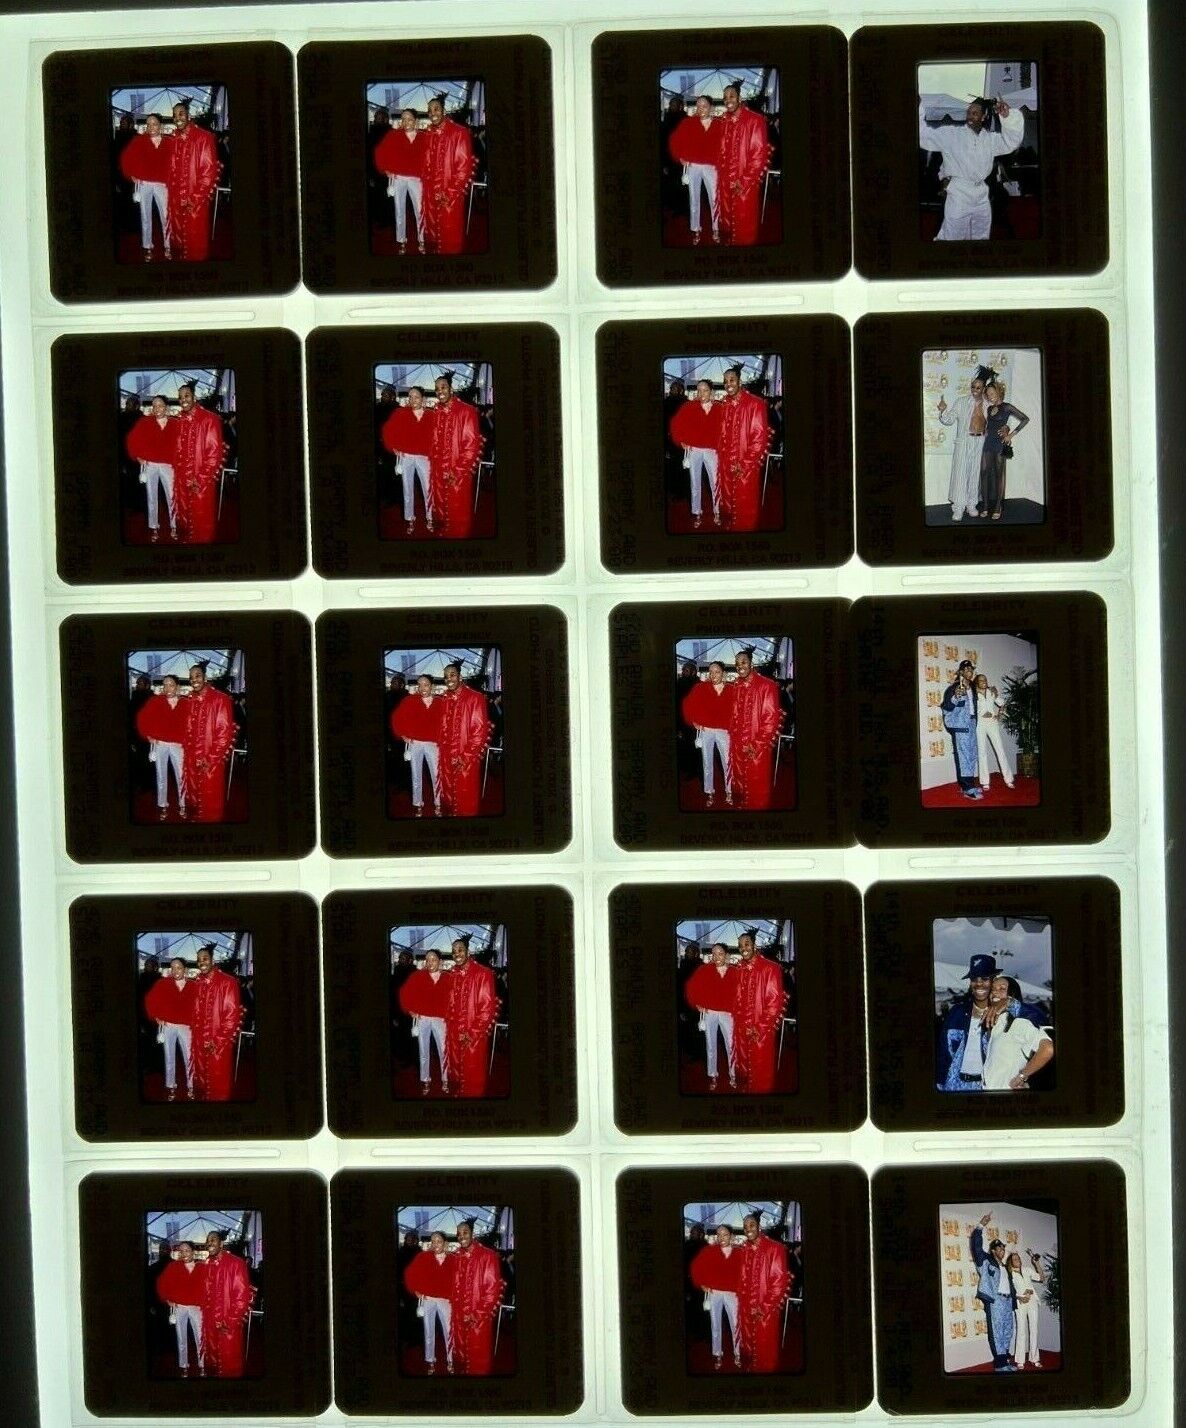 BUSTA RHYMES Rapper 35mm Slide Photo Lot of 20 slides BR2